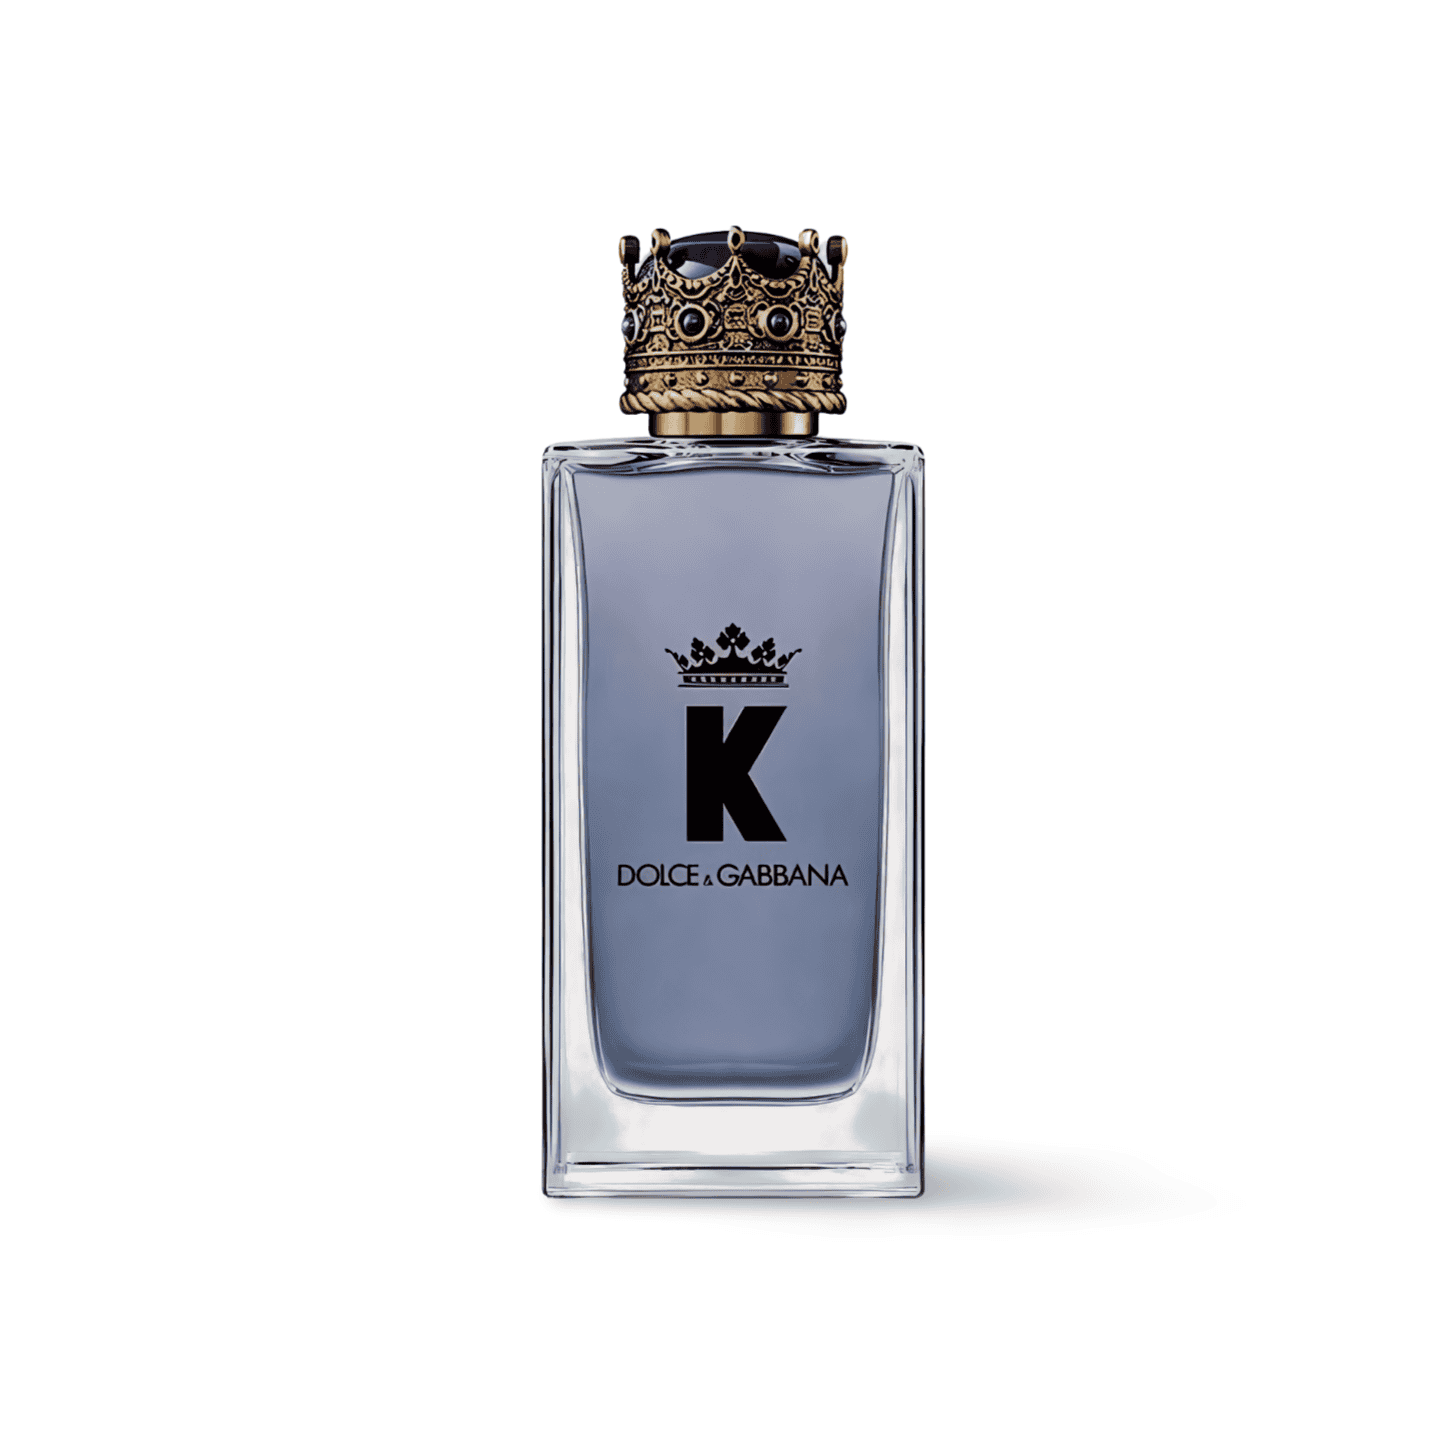 Dolce & Gabbana K Pour Homme Eau De Toilette Perfume